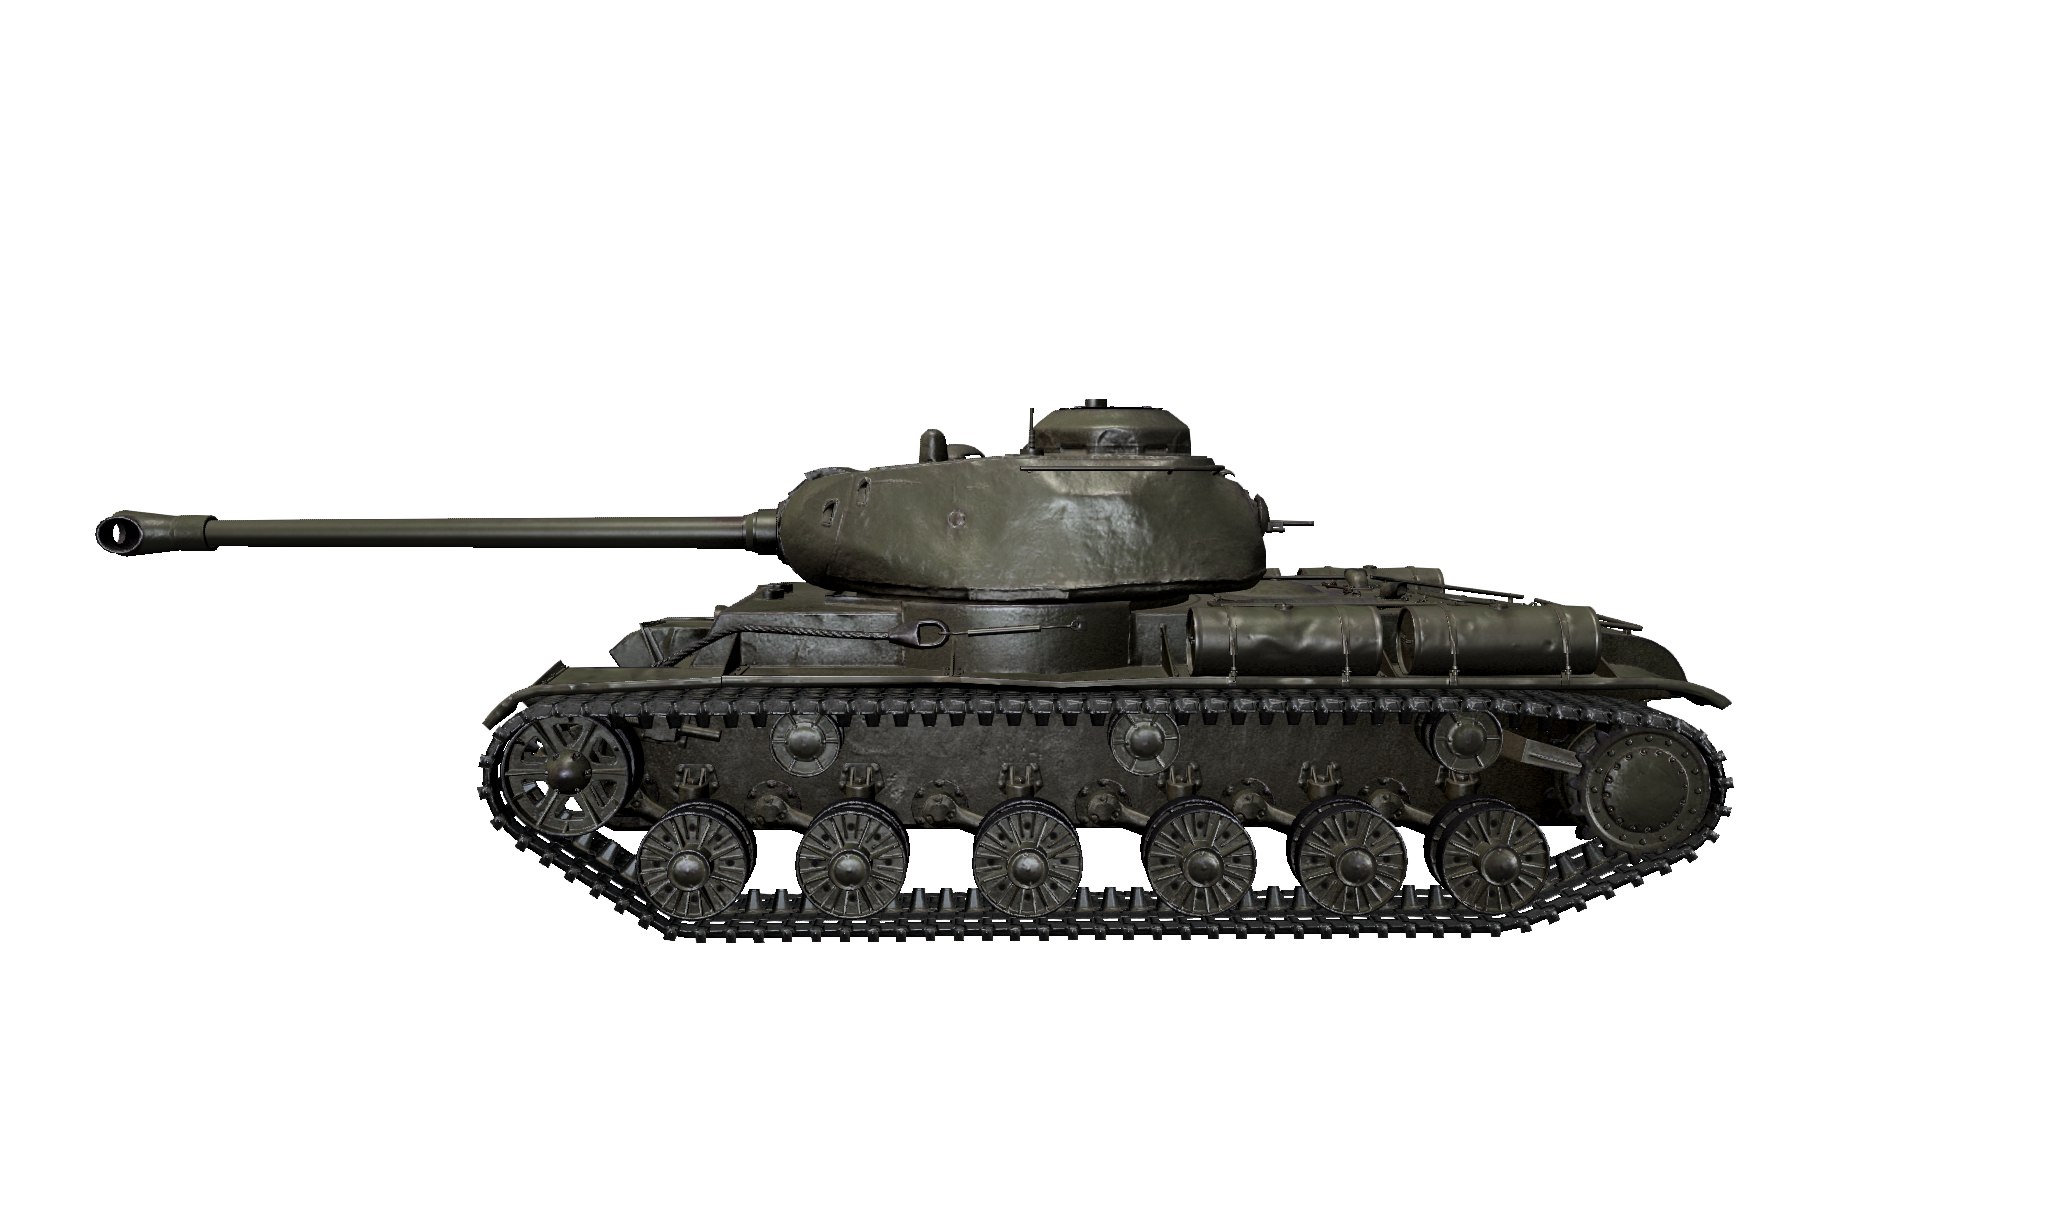 Бок ис. Кв-122 танк. Кв 122 сбоку. Танк кв 122 вид сбоку. Советский тяжелый танк кв122.